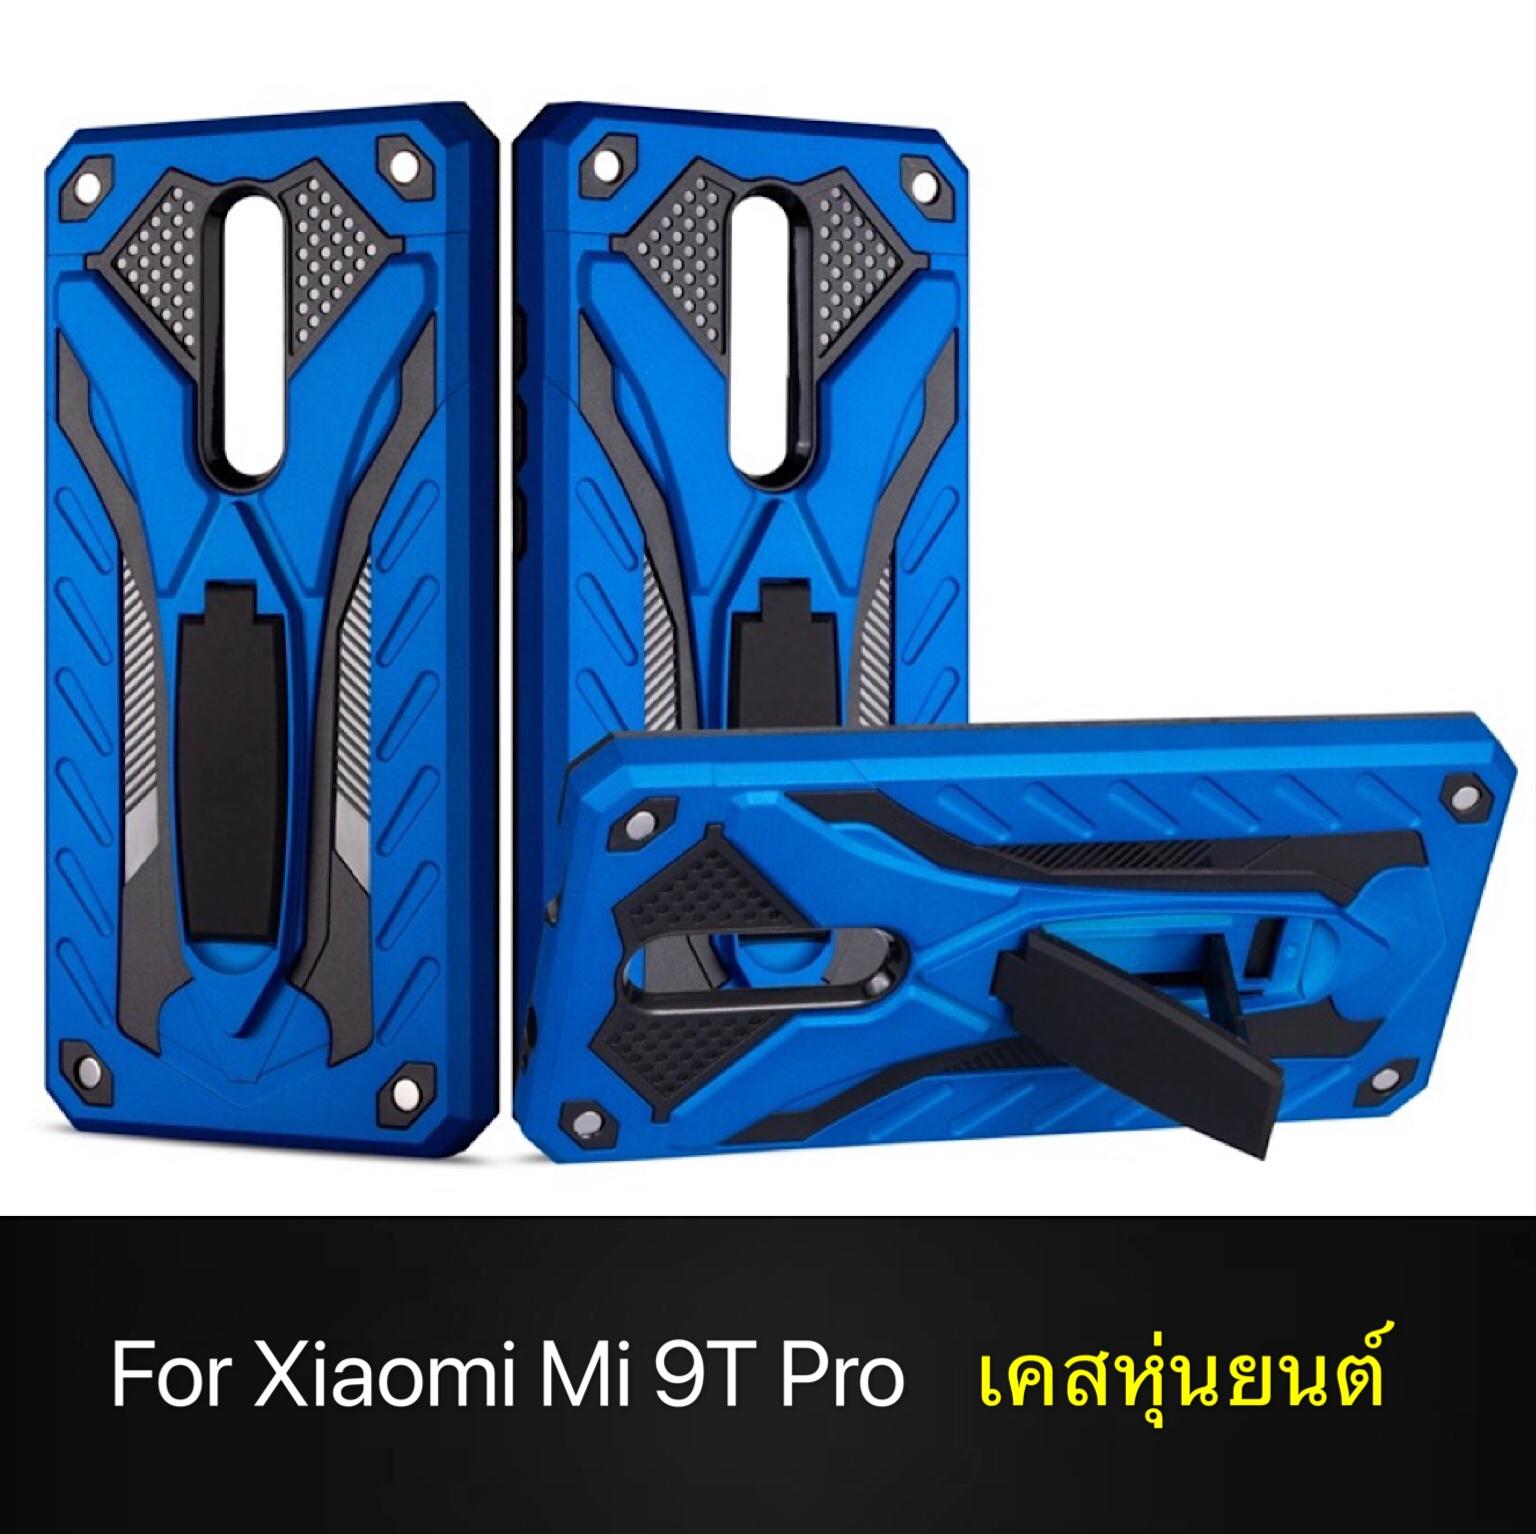 พร้อมส่งทันที !! Case Xiaomi Mi 9T Pro เคสเสียวหมี่ Mi 9TPro เคสหุ่นยนต์ เคสไฮบริด มีขาตั้ง เคสกันกระแทก TPU CASE Case xiaomi mi 9t pro สินค้าใหม่